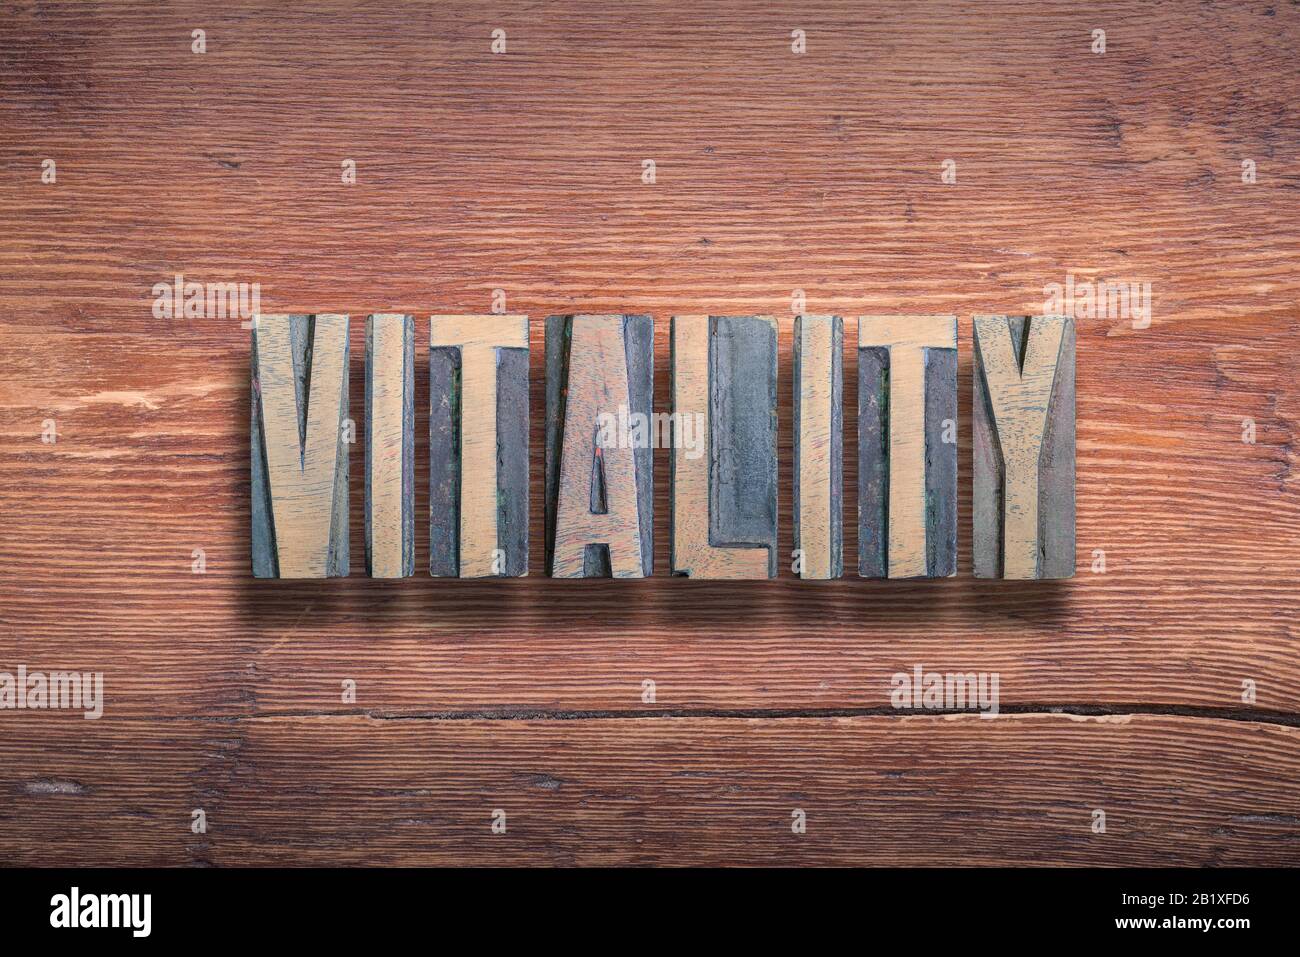 parola vitality combinata su superficie in legno verniciato vintage Foto Stock